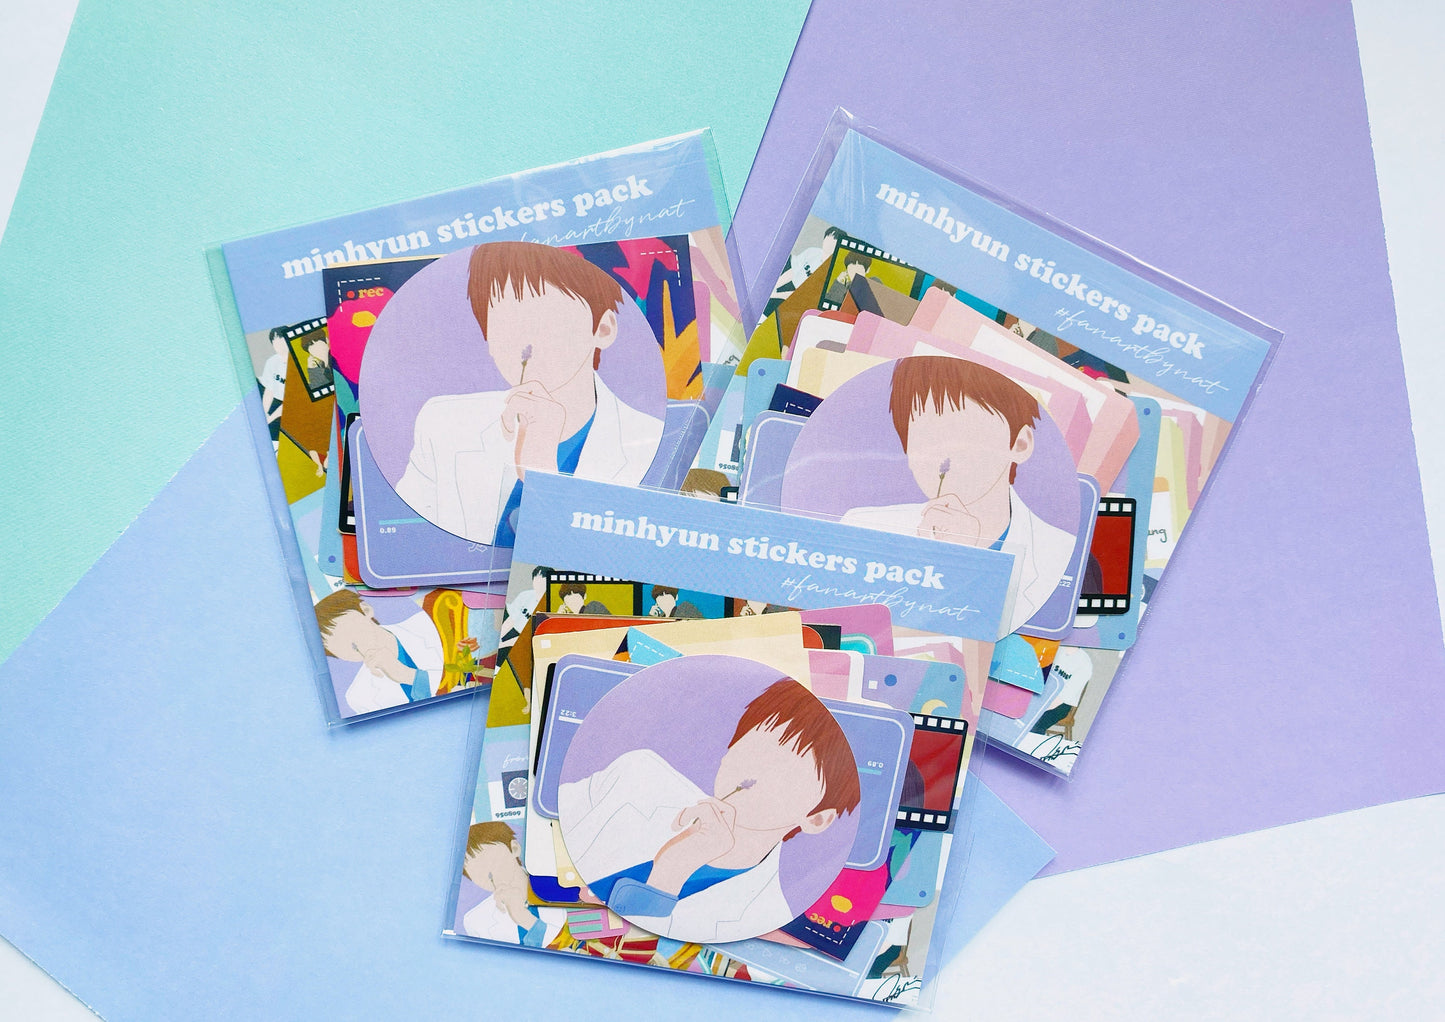 Nu’est Wanna One Hwang Minhyun Sticker Set - Kpop Journal Stickers